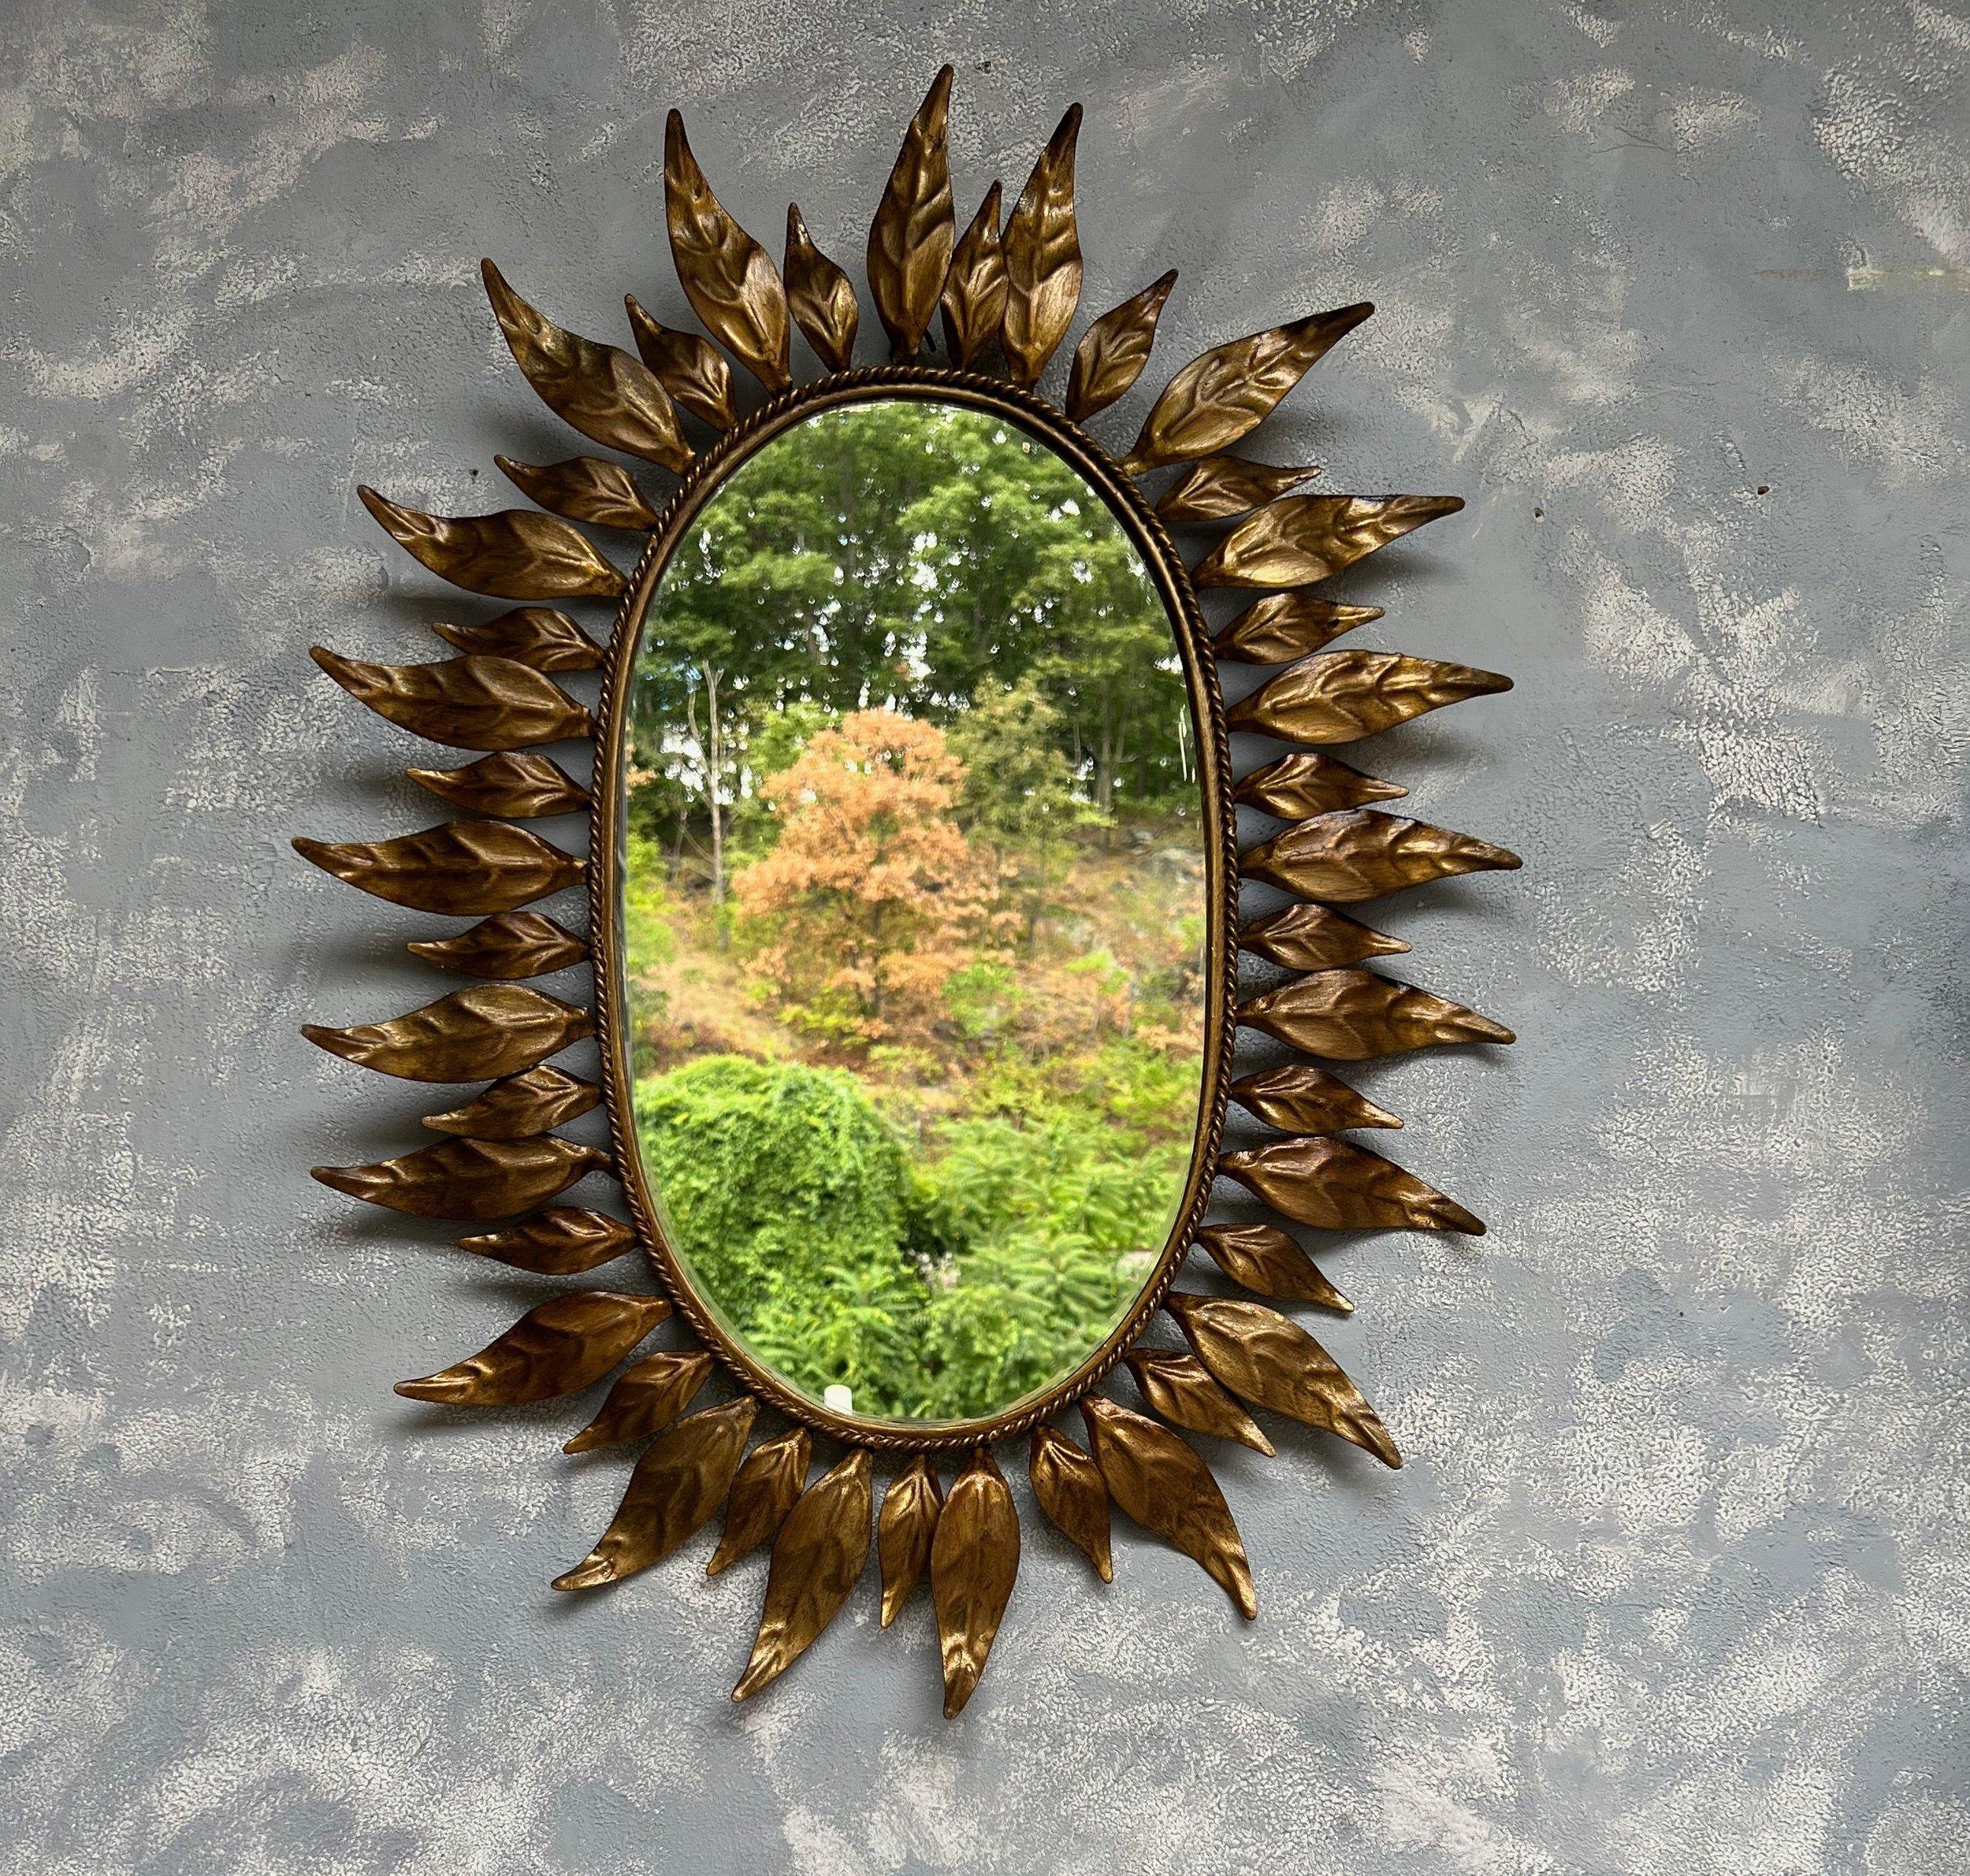 Dieser ovale Spiegel aus vergoldetem Metall besticht durch sein ausgeprägtes und fesselndes Design. Der Spiegel zeigt eine Kombination aus großen und kleinen Blättern oder Strahlen, die einen fein geflochtenen Innenrahmen umschließen. Das Metall